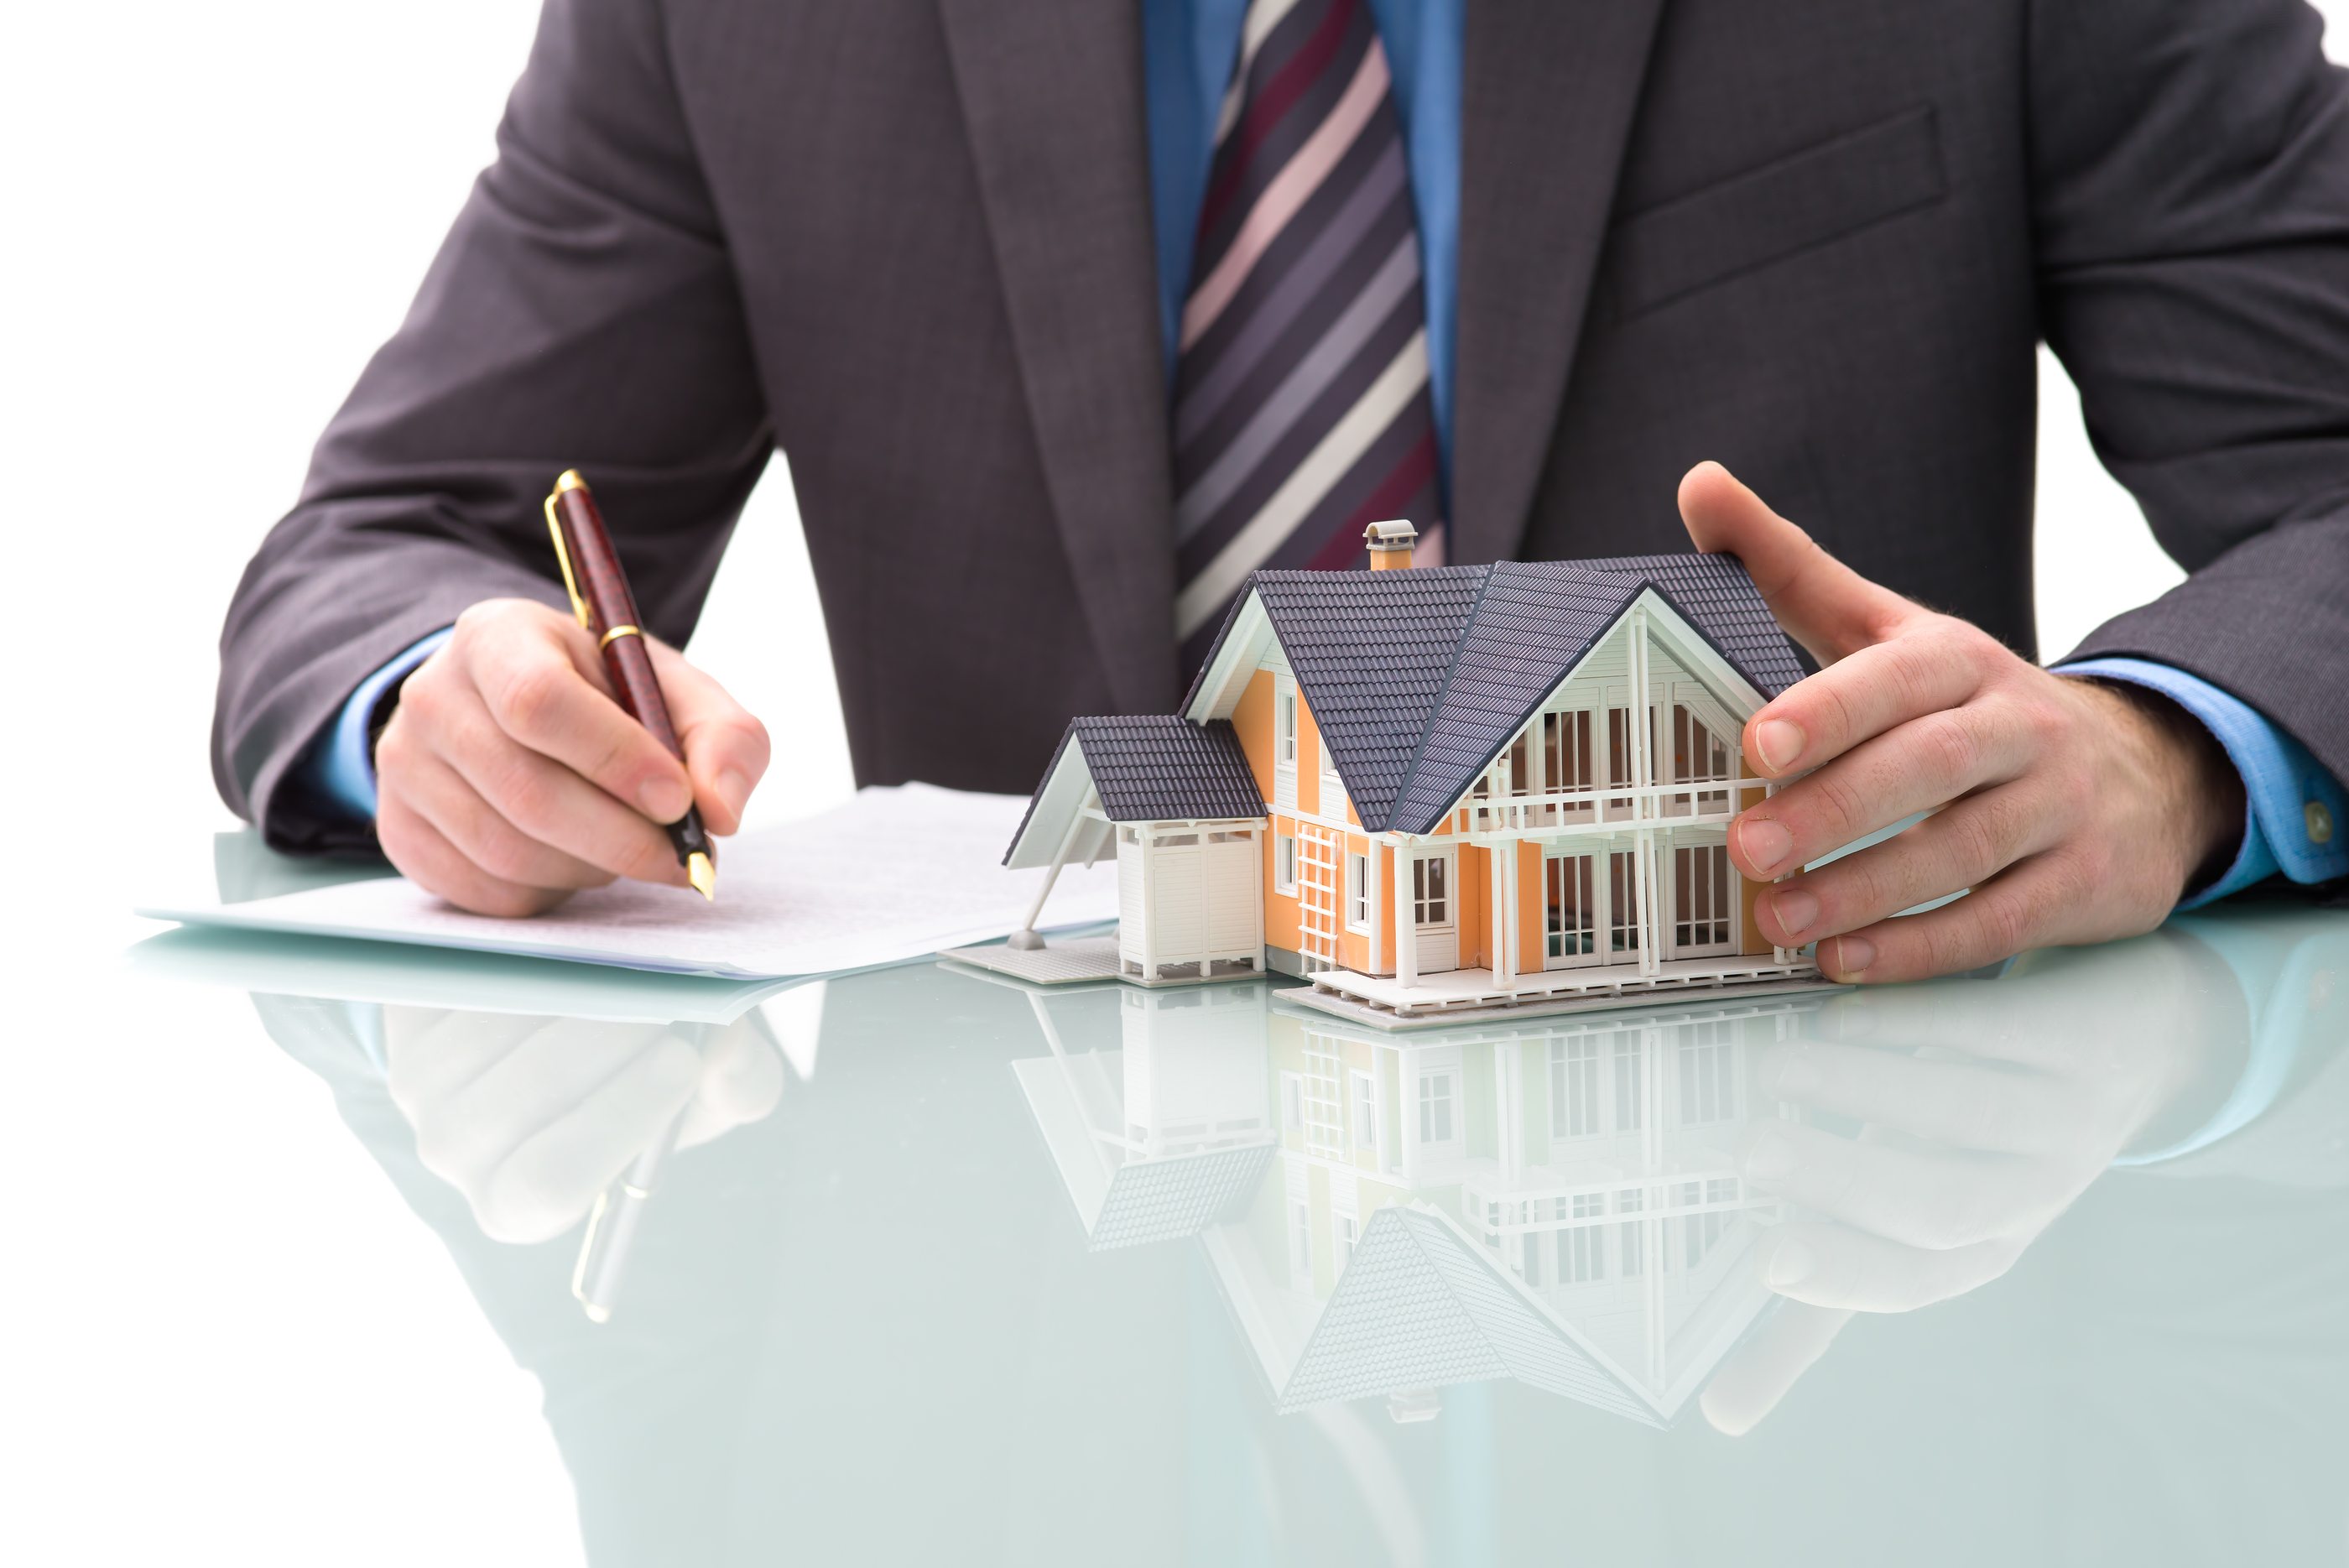 معامله خانه - چرا نباید شفاهی معامله کرد